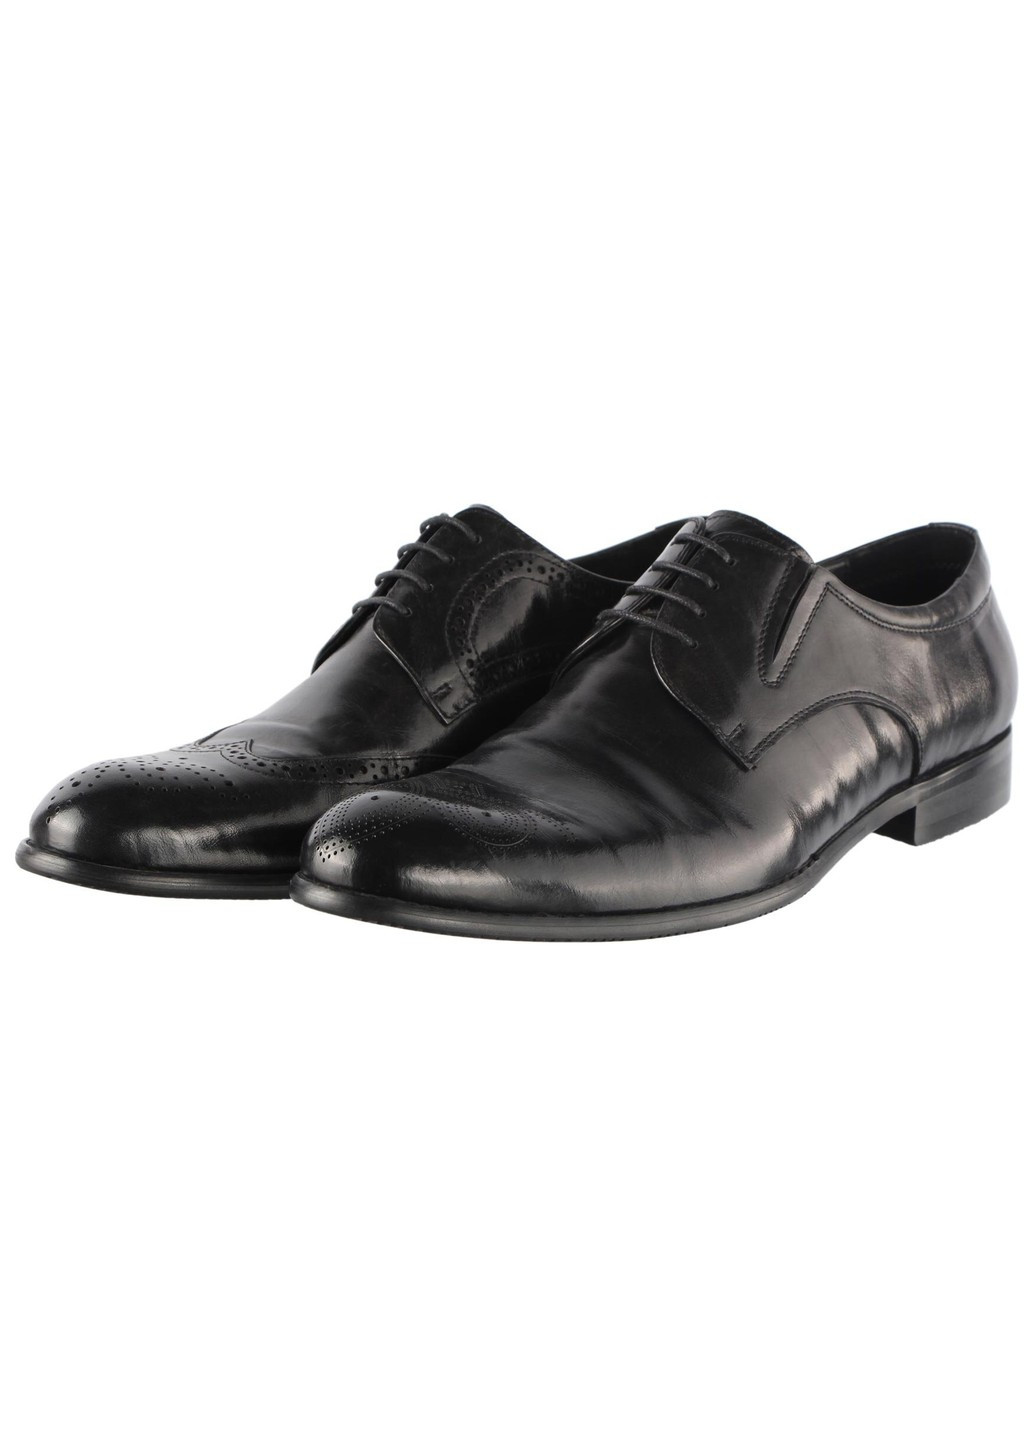 Черные мужские классические туфли 15457 Cosottinni на шнурках